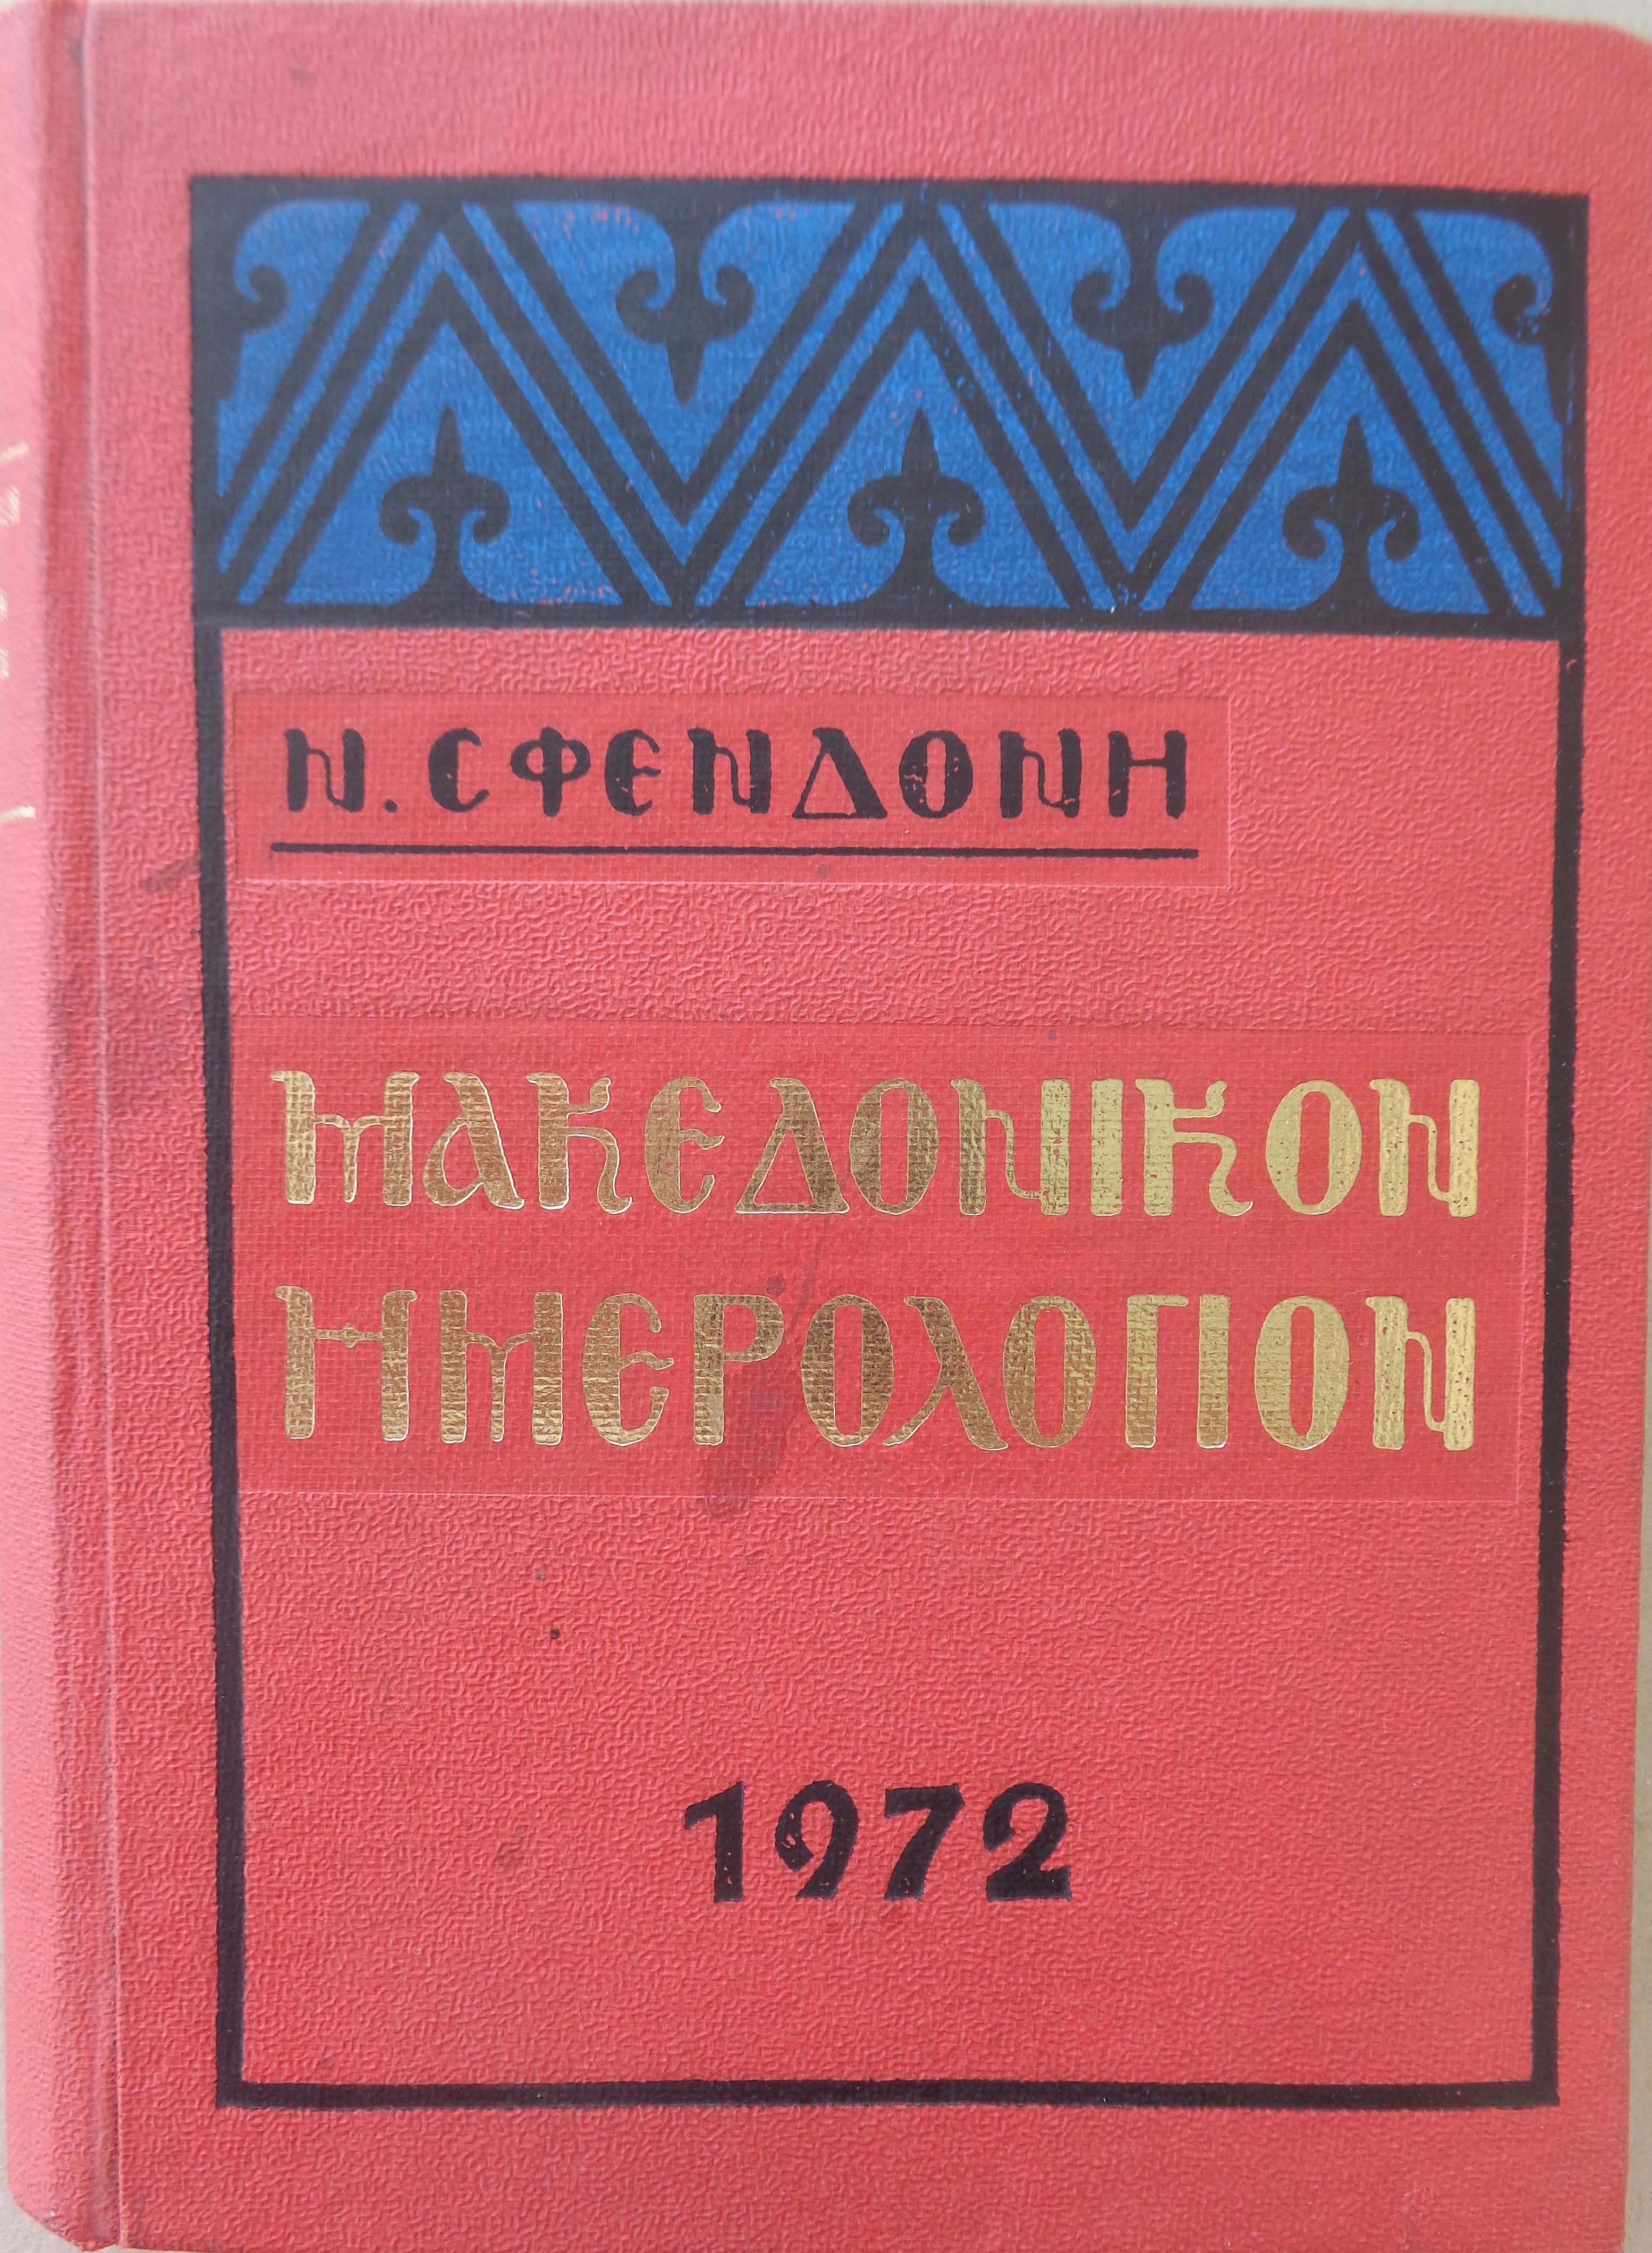 ΜΑΚΕΔΟΝΙΑ ΣΦΕΝΔΟΝΗΣ ΝΙΚΟΛΑΟΣ   Μακεδονικο Ημερολογιο 1972 